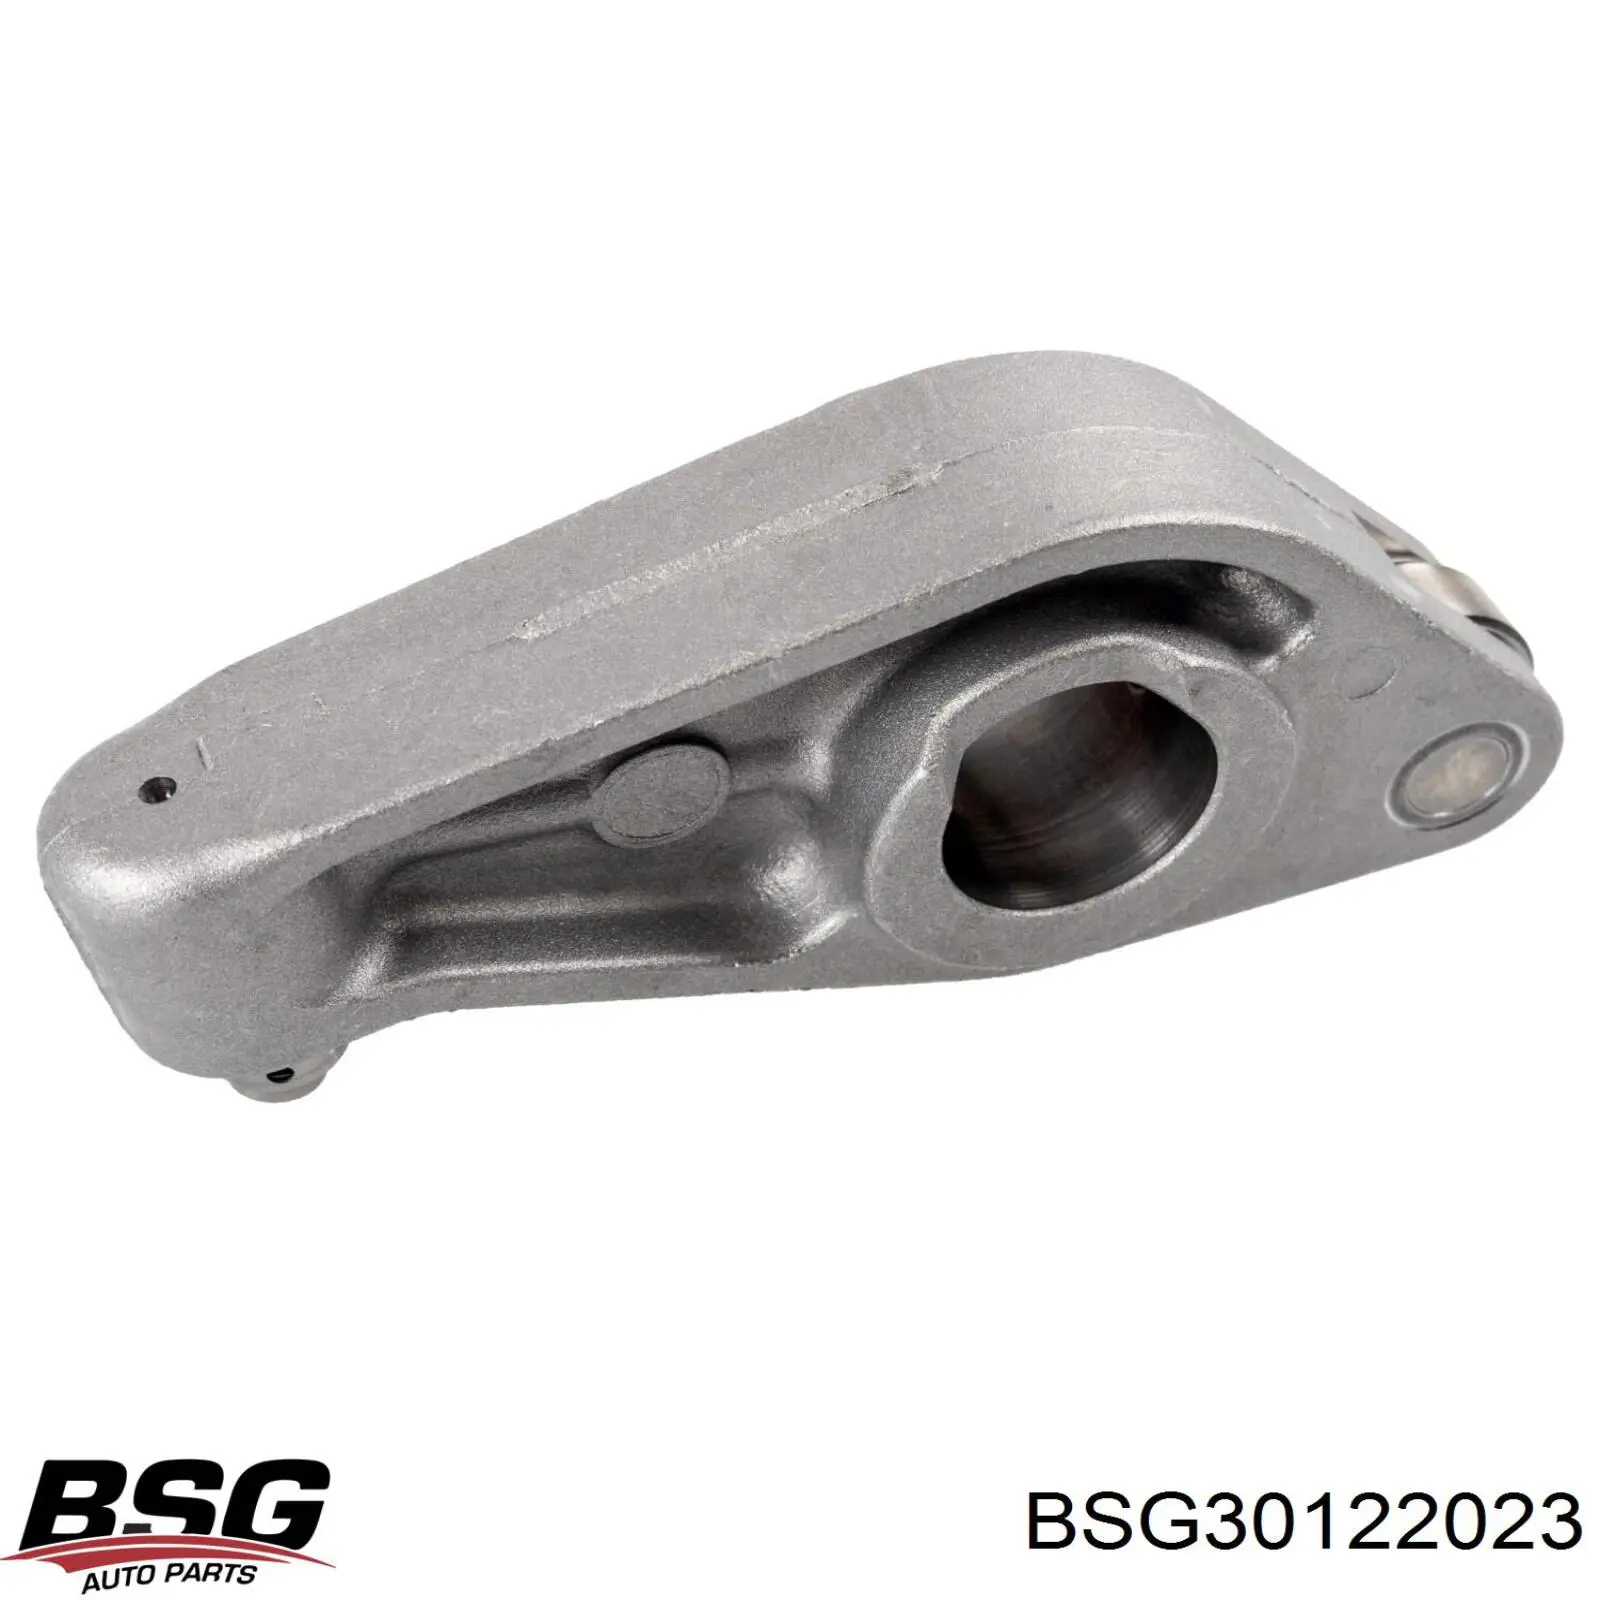 BSG 30-122-023 BSG palanca oscilante, distribución del motor, lado de admisión